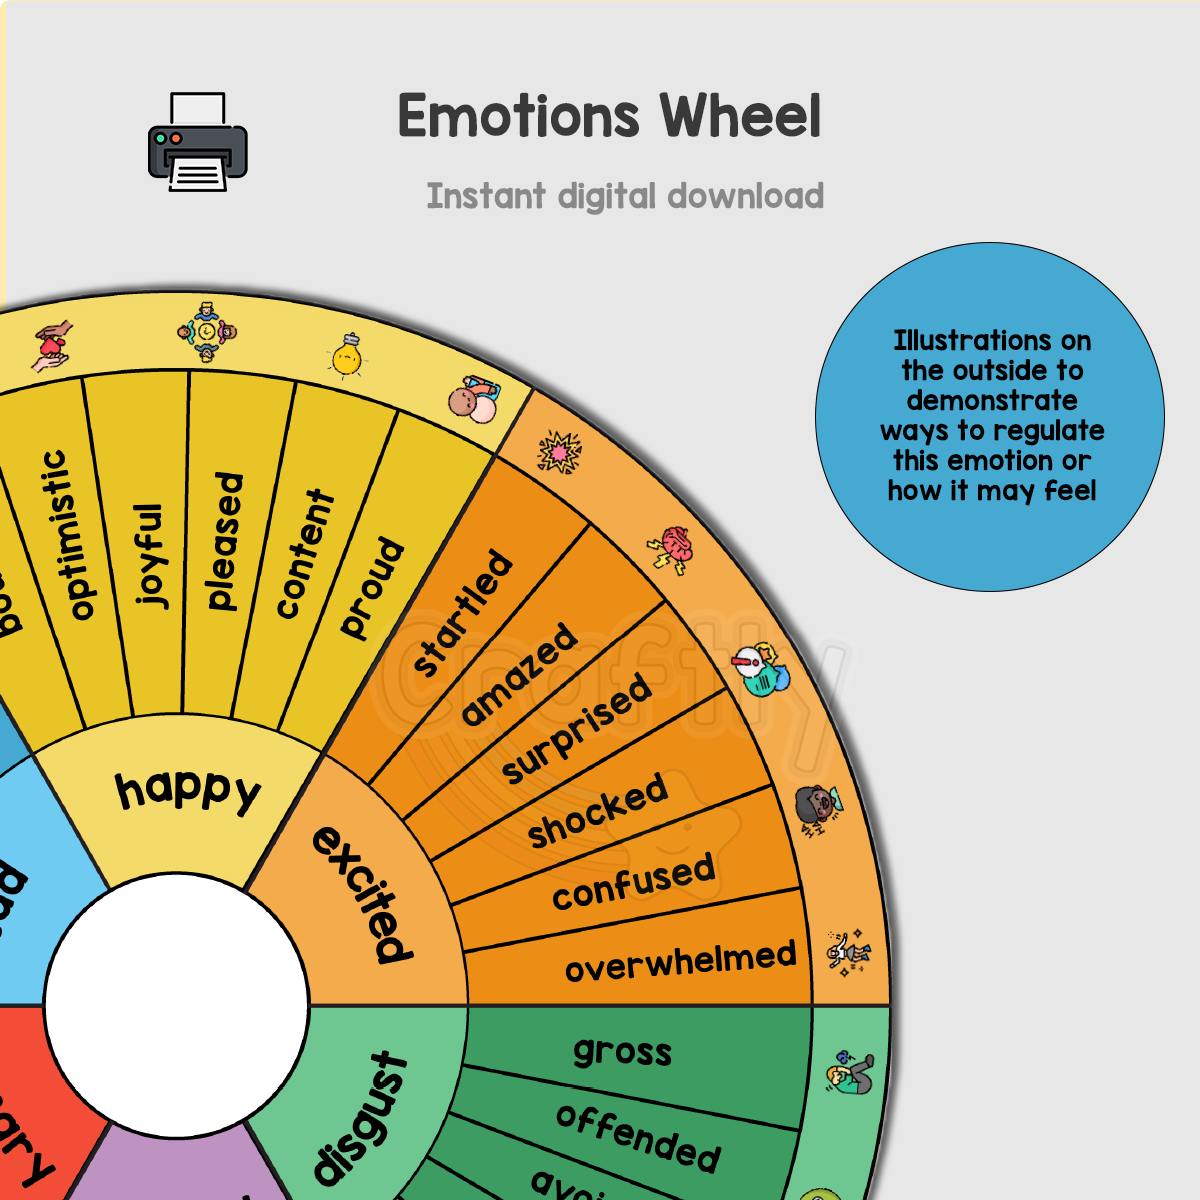 Children's Emotions Wheel for 5+